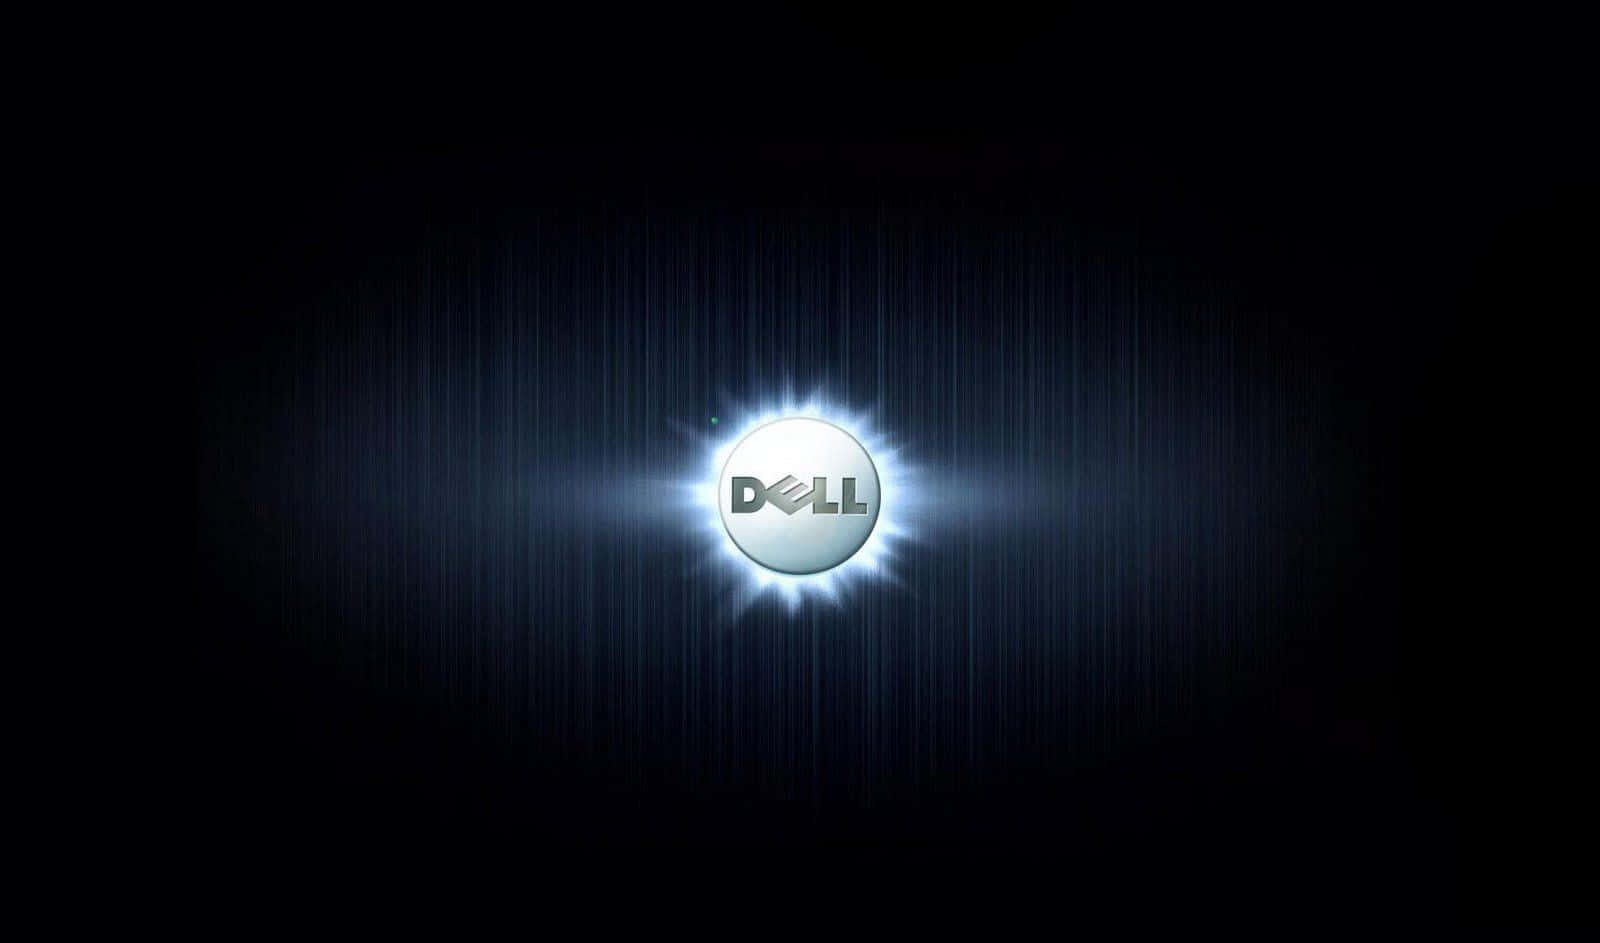 Forretningsløsningerdrevet Af Dell.